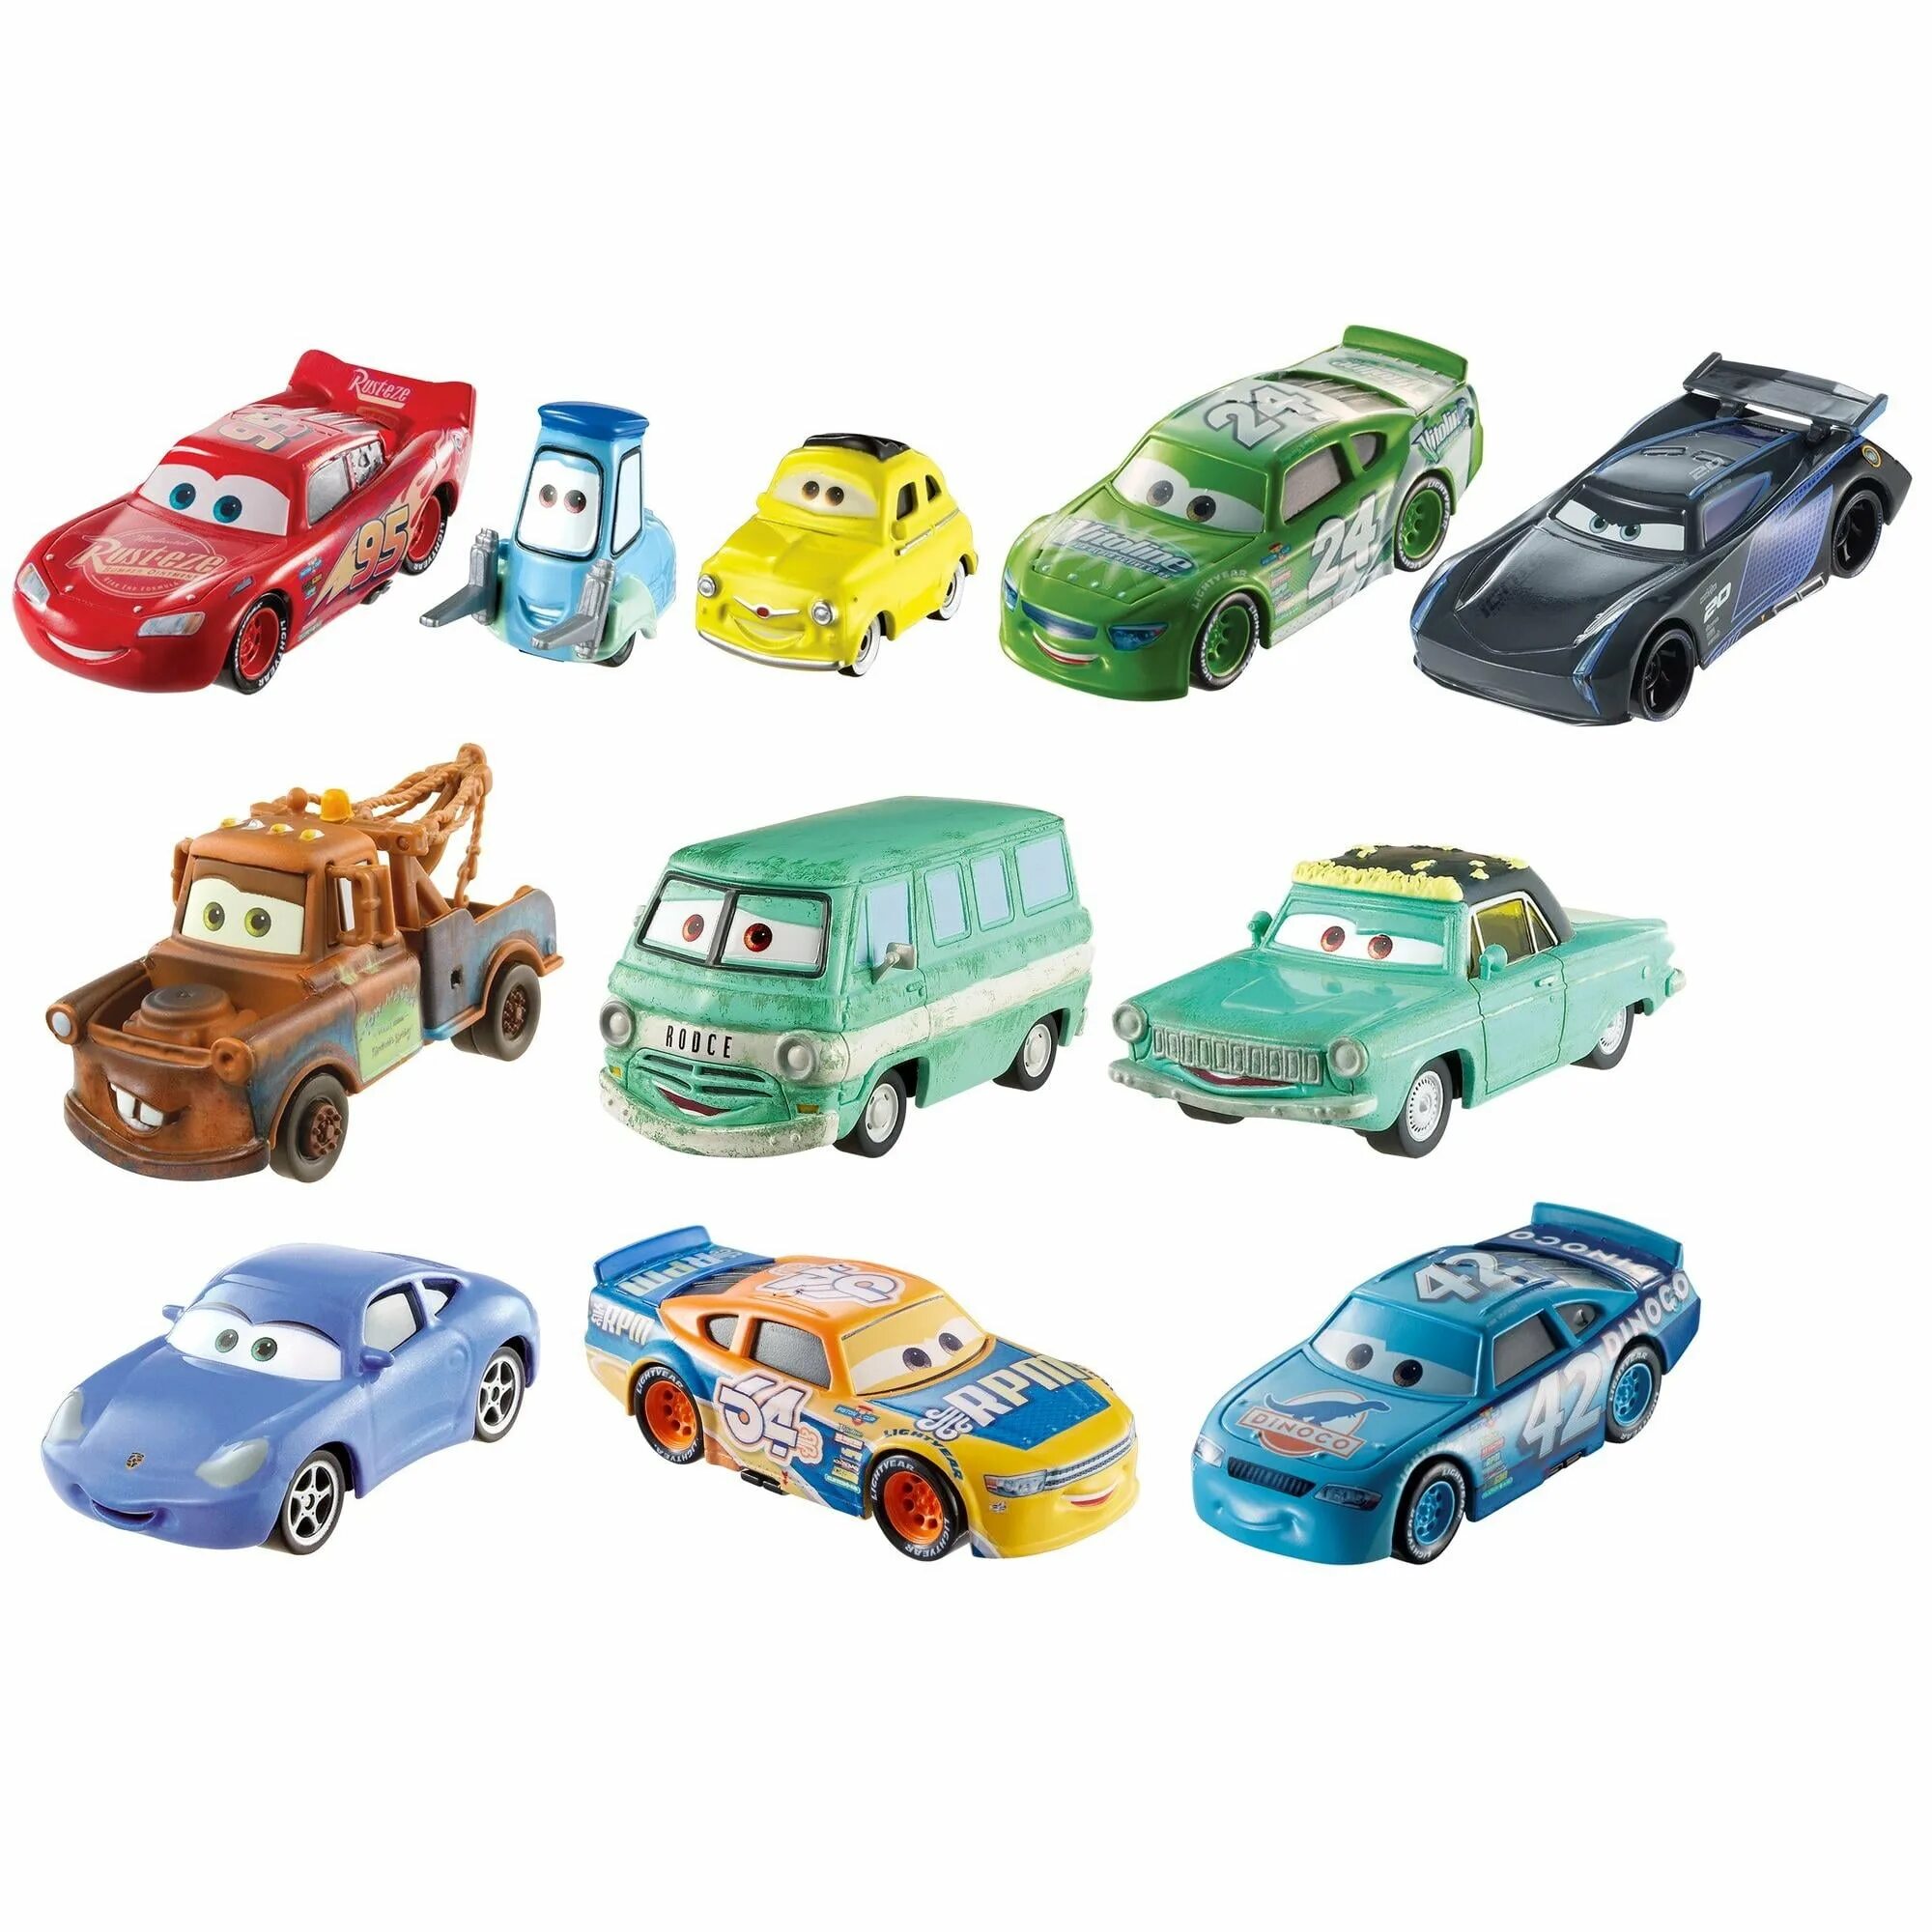 Игрушки Disney Pixar cars Mattel. Mattel Disney Pixar cars 3. Набор машинок Тачки Disney Pixar. Тачки 3 игрушки Tomica. Машинки 10 9 8 7